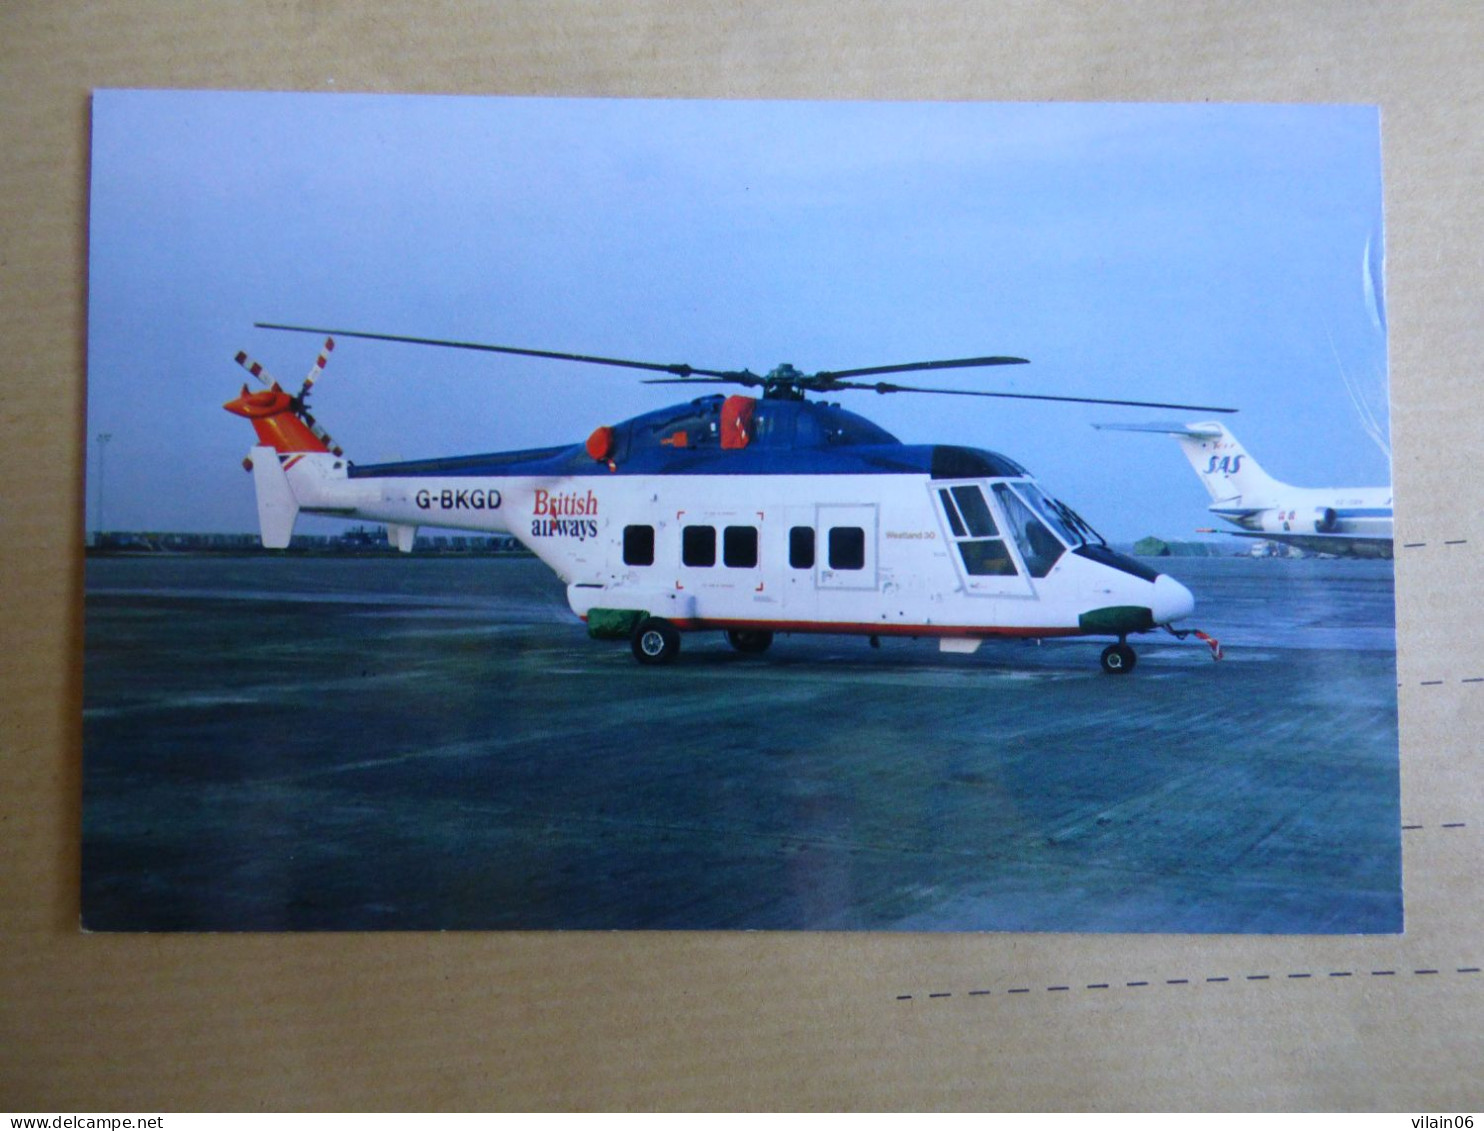 WESTLAND 30   BRITISH AIRWAYS  G-BKGD - Helicopters